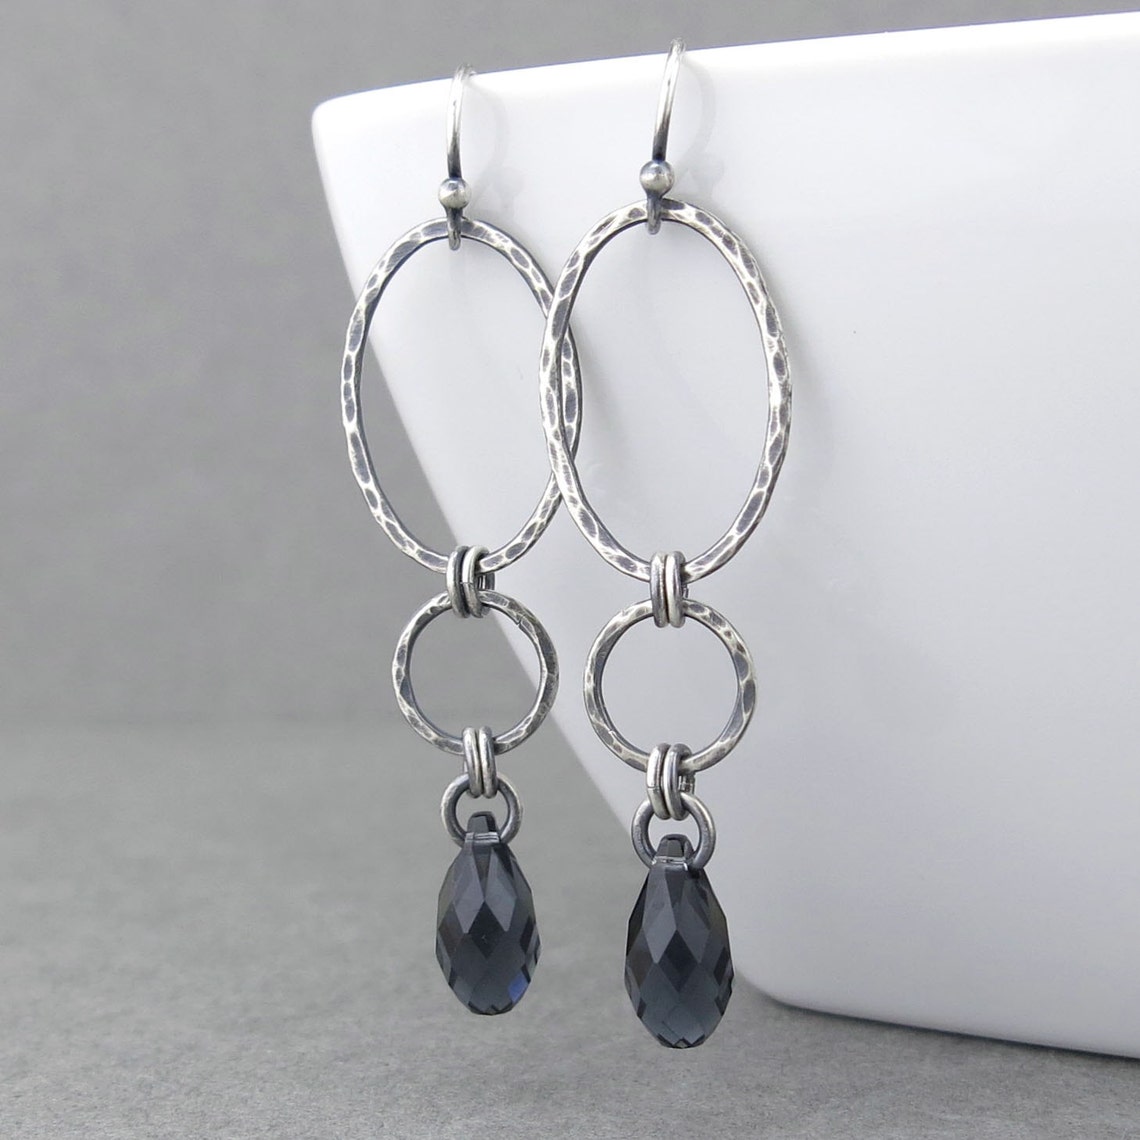 Long Earrings for Women Silver Drop Earrings Gray Crystal | Etsy